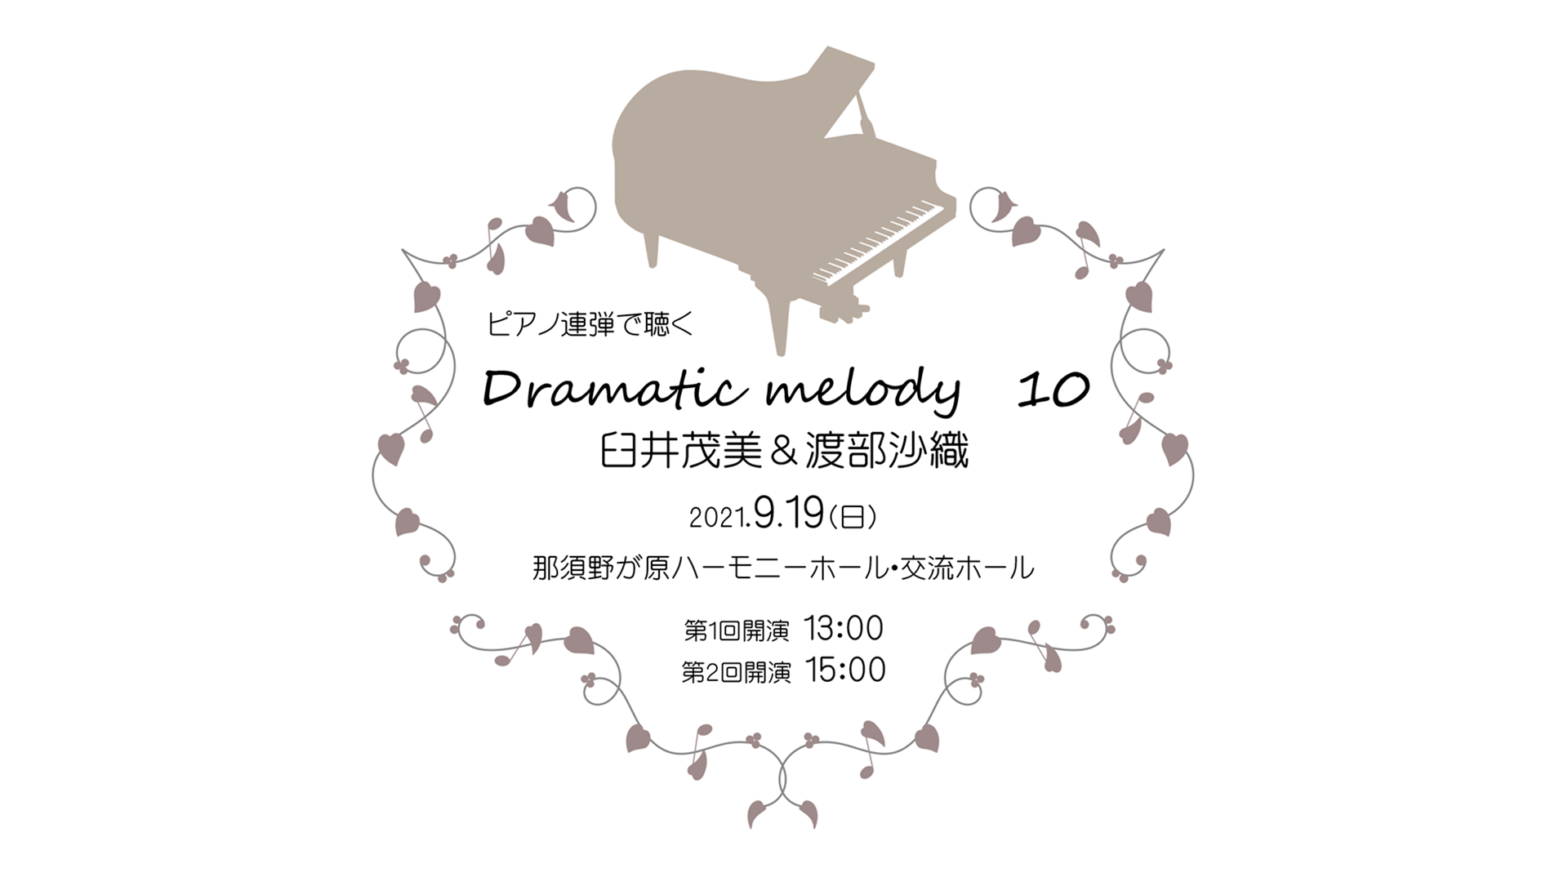 コンサートのご案内〜Dramatic melody 10